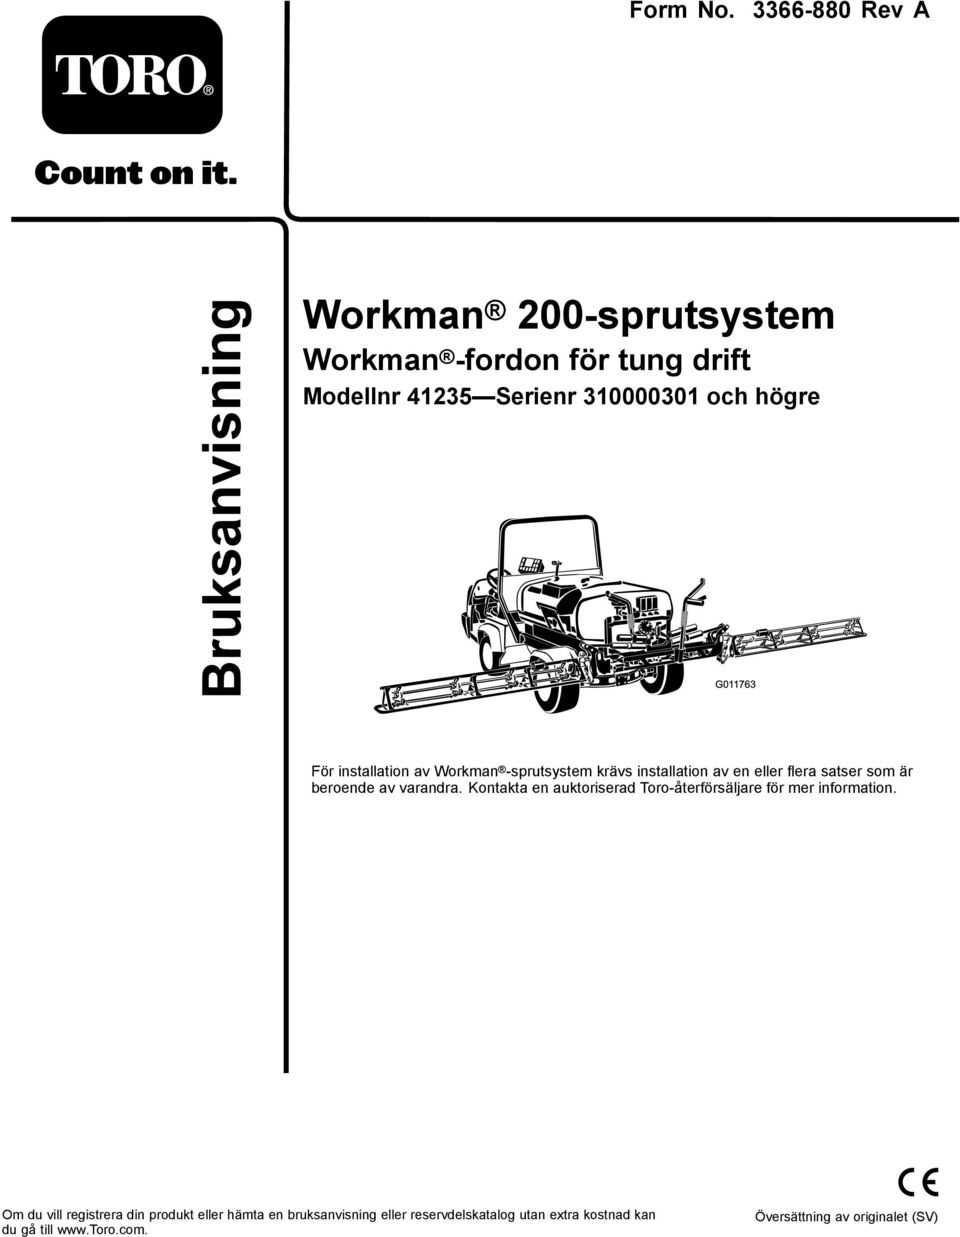 G011763 För installation av Workman -sprutsystem krävs installation av en eller flera satser som är beroende av